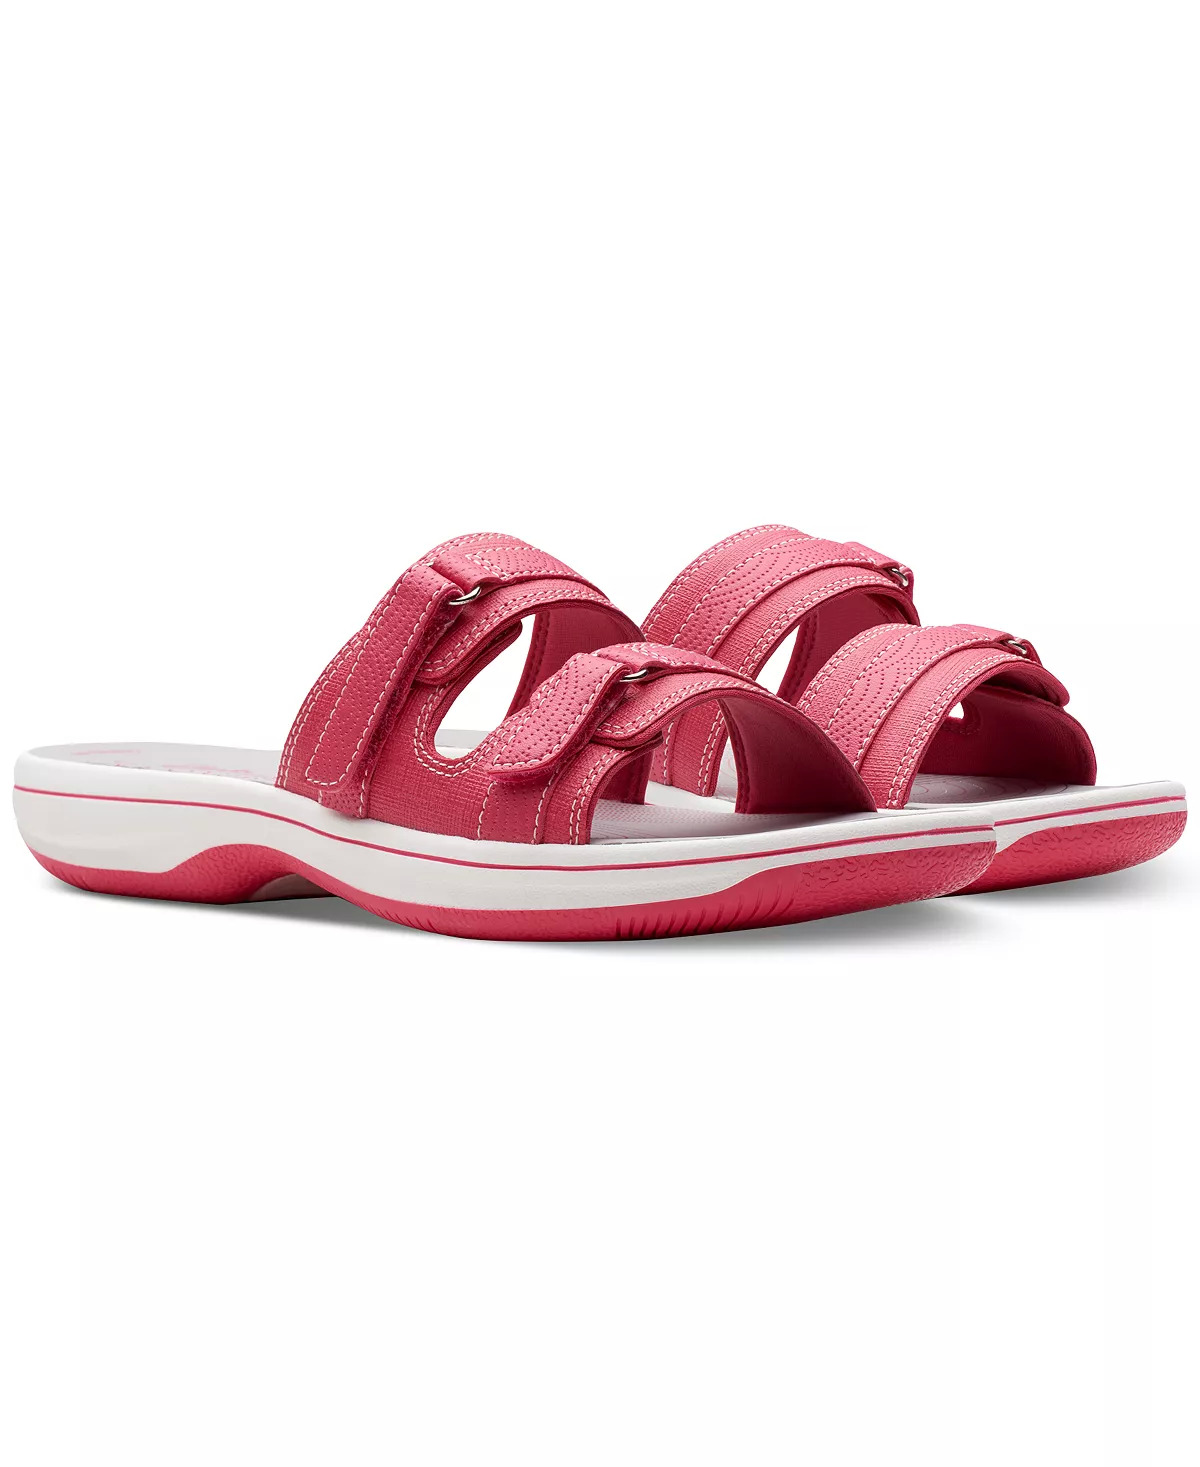 Clarks Women's Sandals & Sneakers: Cloudsteppers Breeze Piper Comfort ...